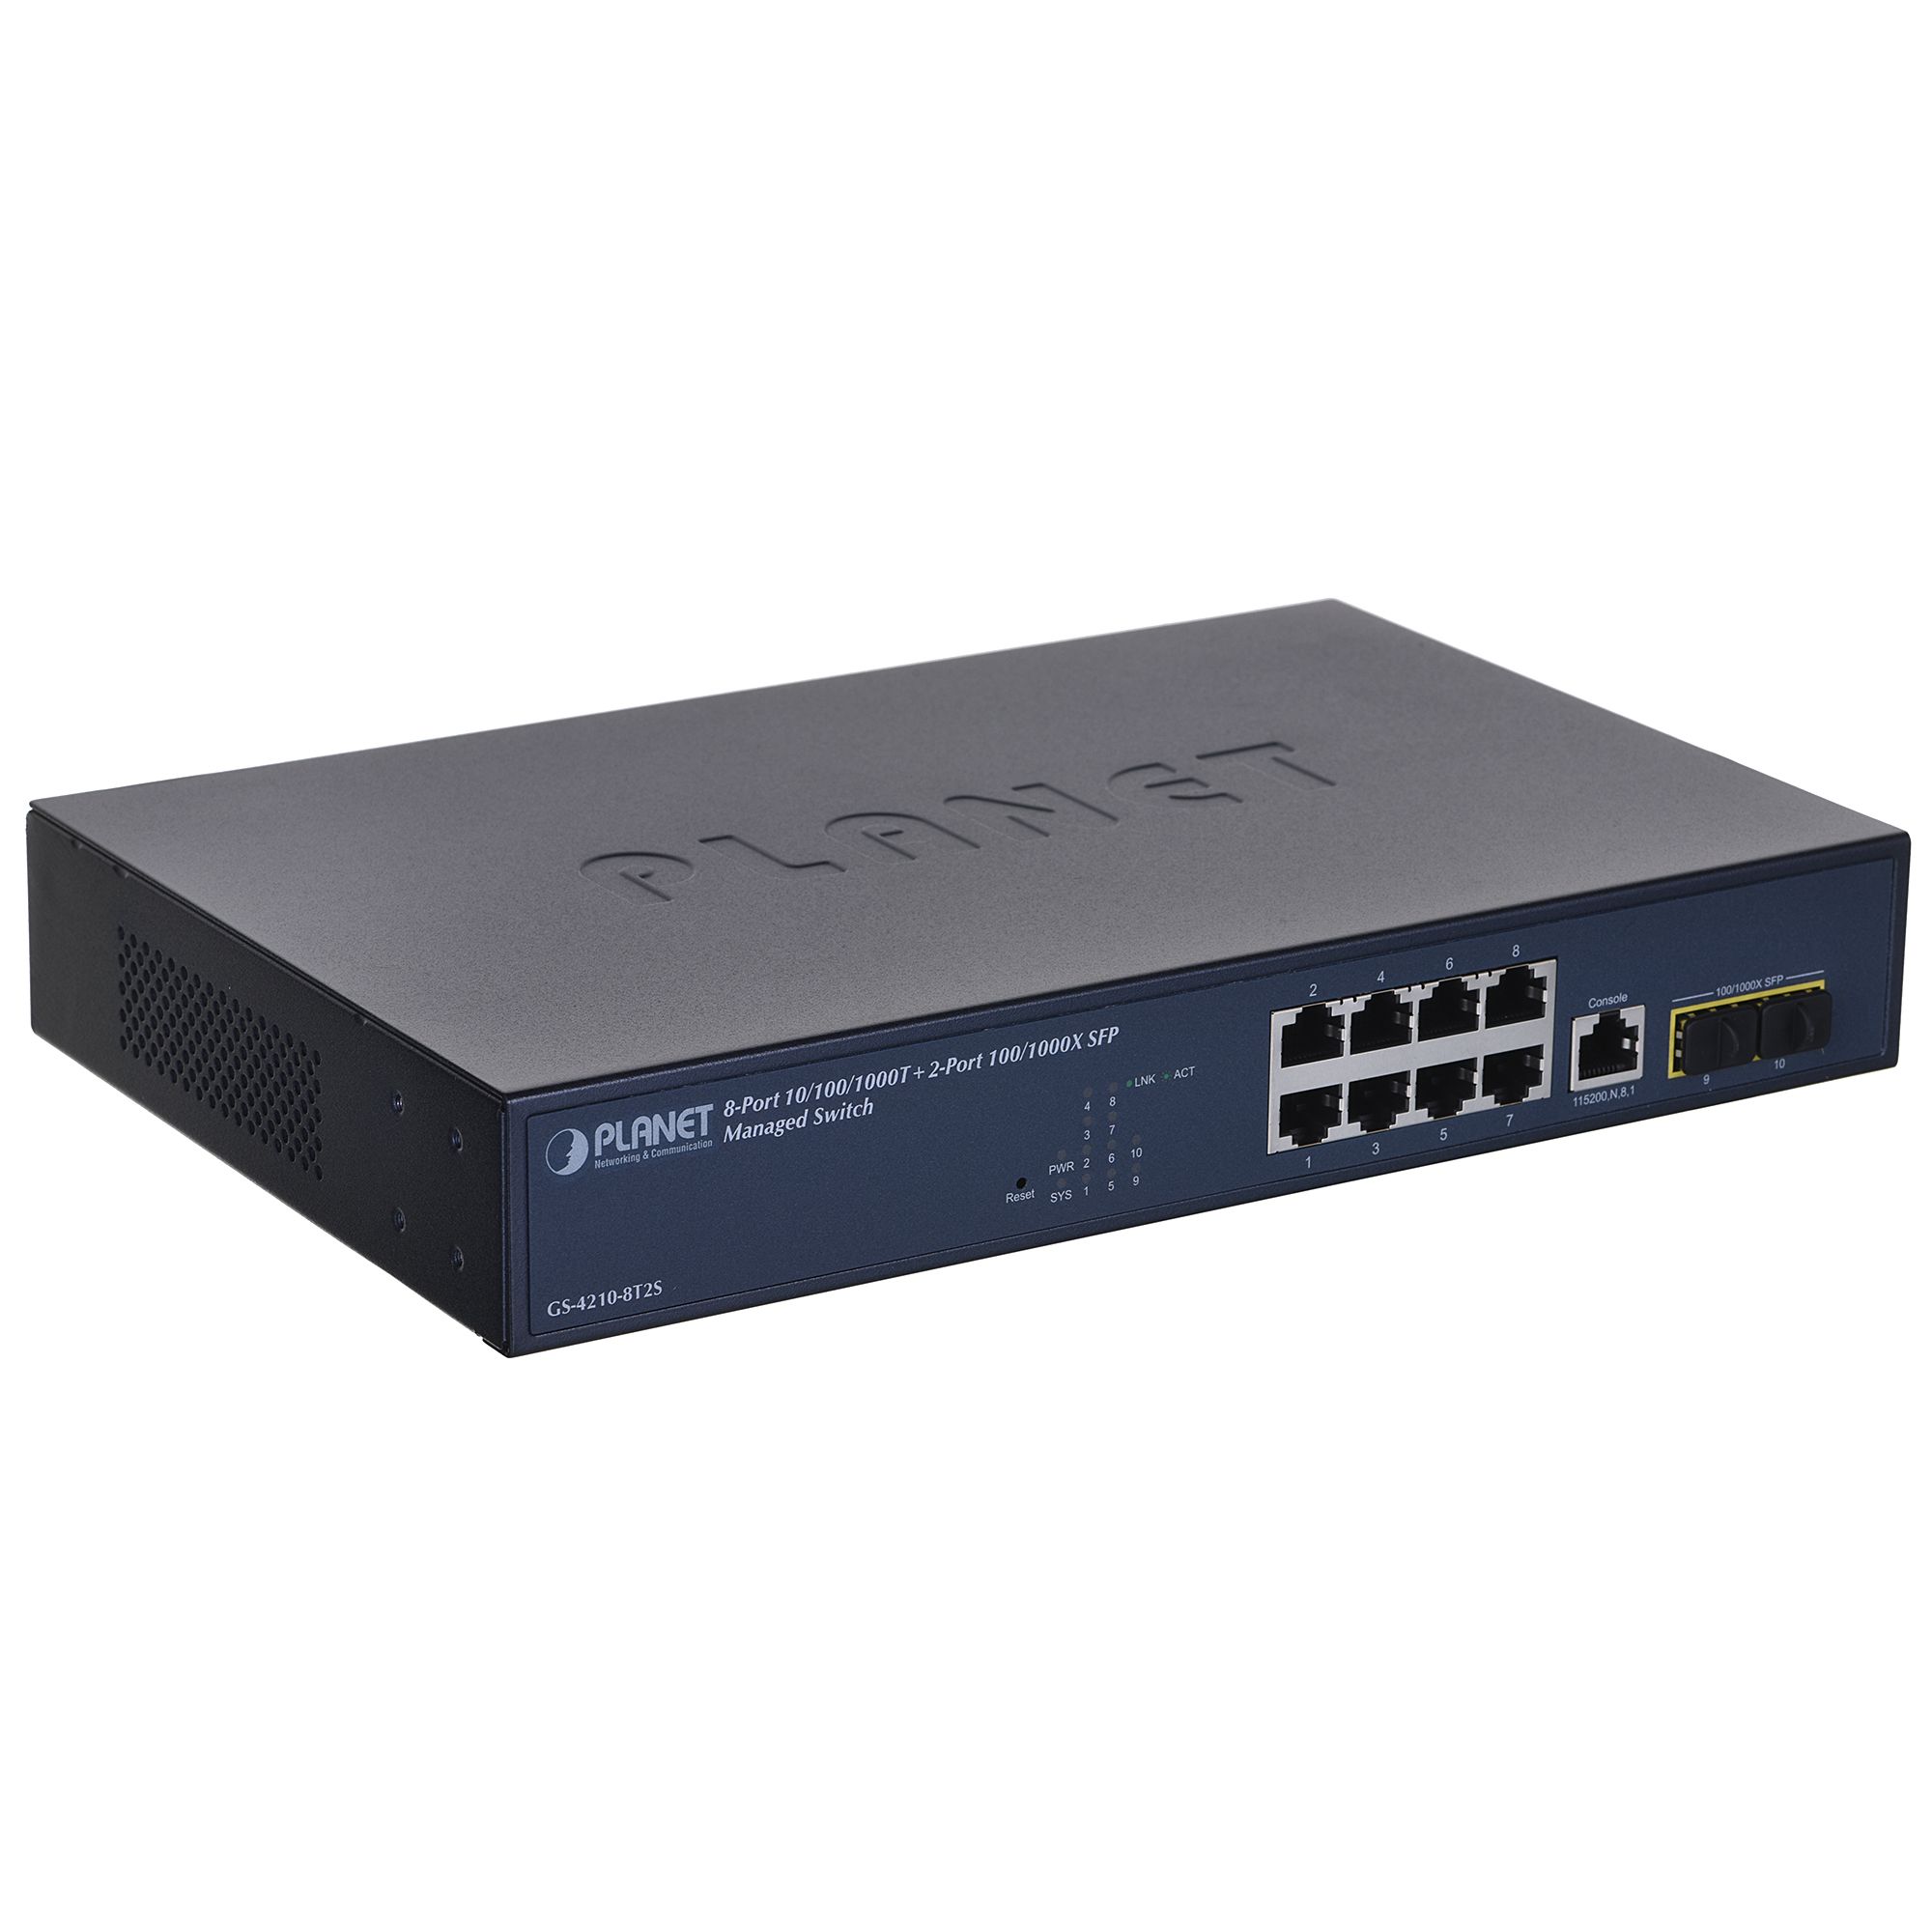 PLANET 10/100/1000T + 2-Port Managed L2/L4 Gigabit Ethernet (10/100/1000) 1U Blue_2